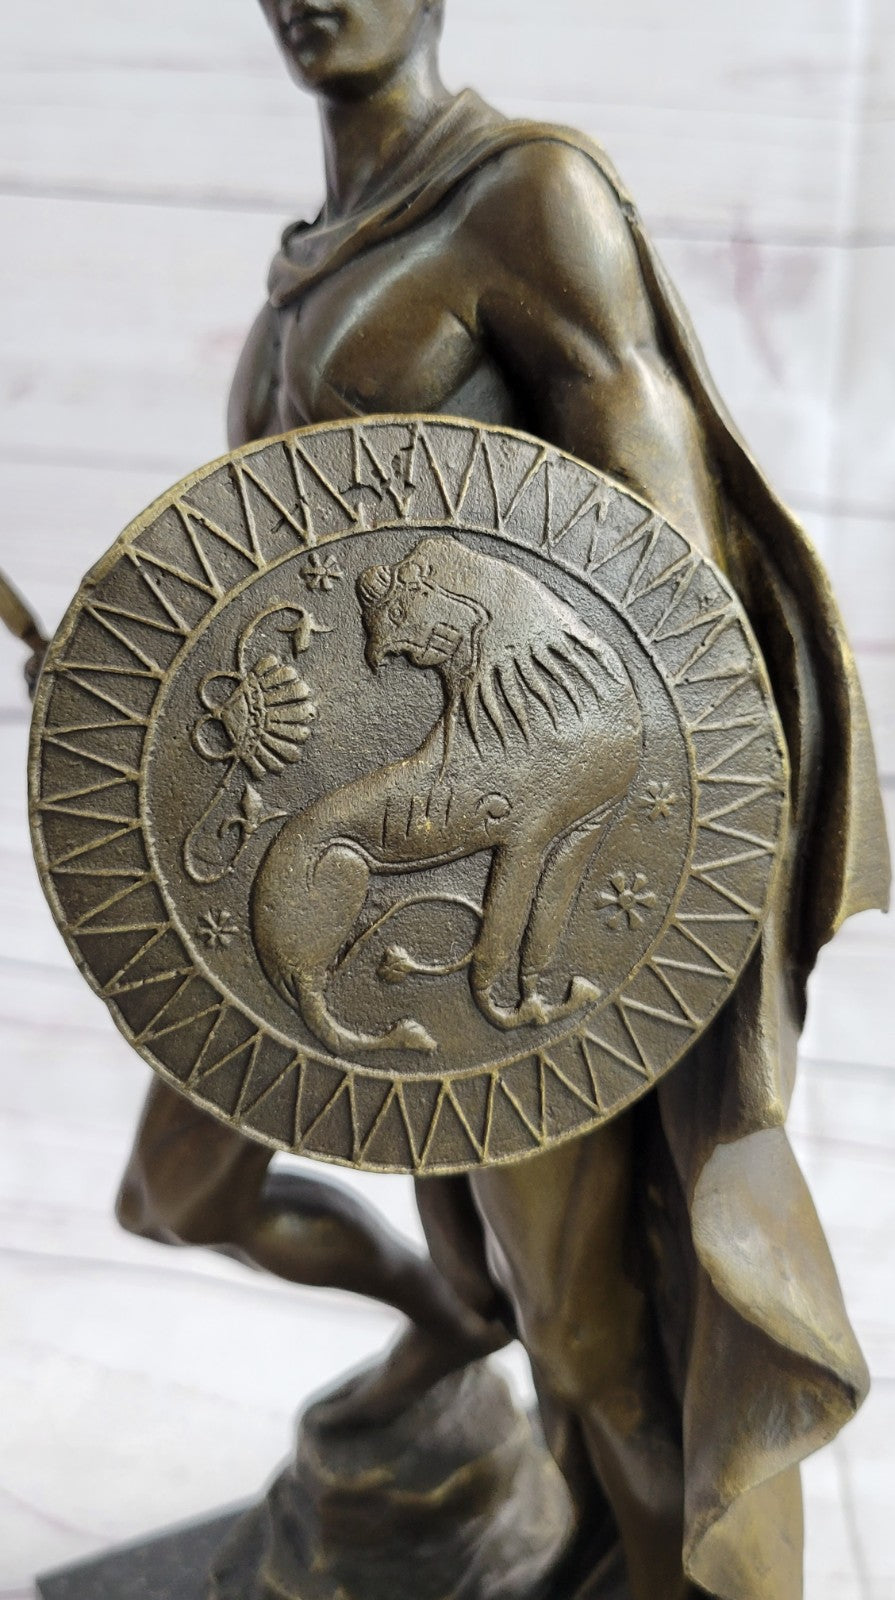 Bronze Statue on Marble Roman Soldier Spartan Warrior sculpture figurine Décor